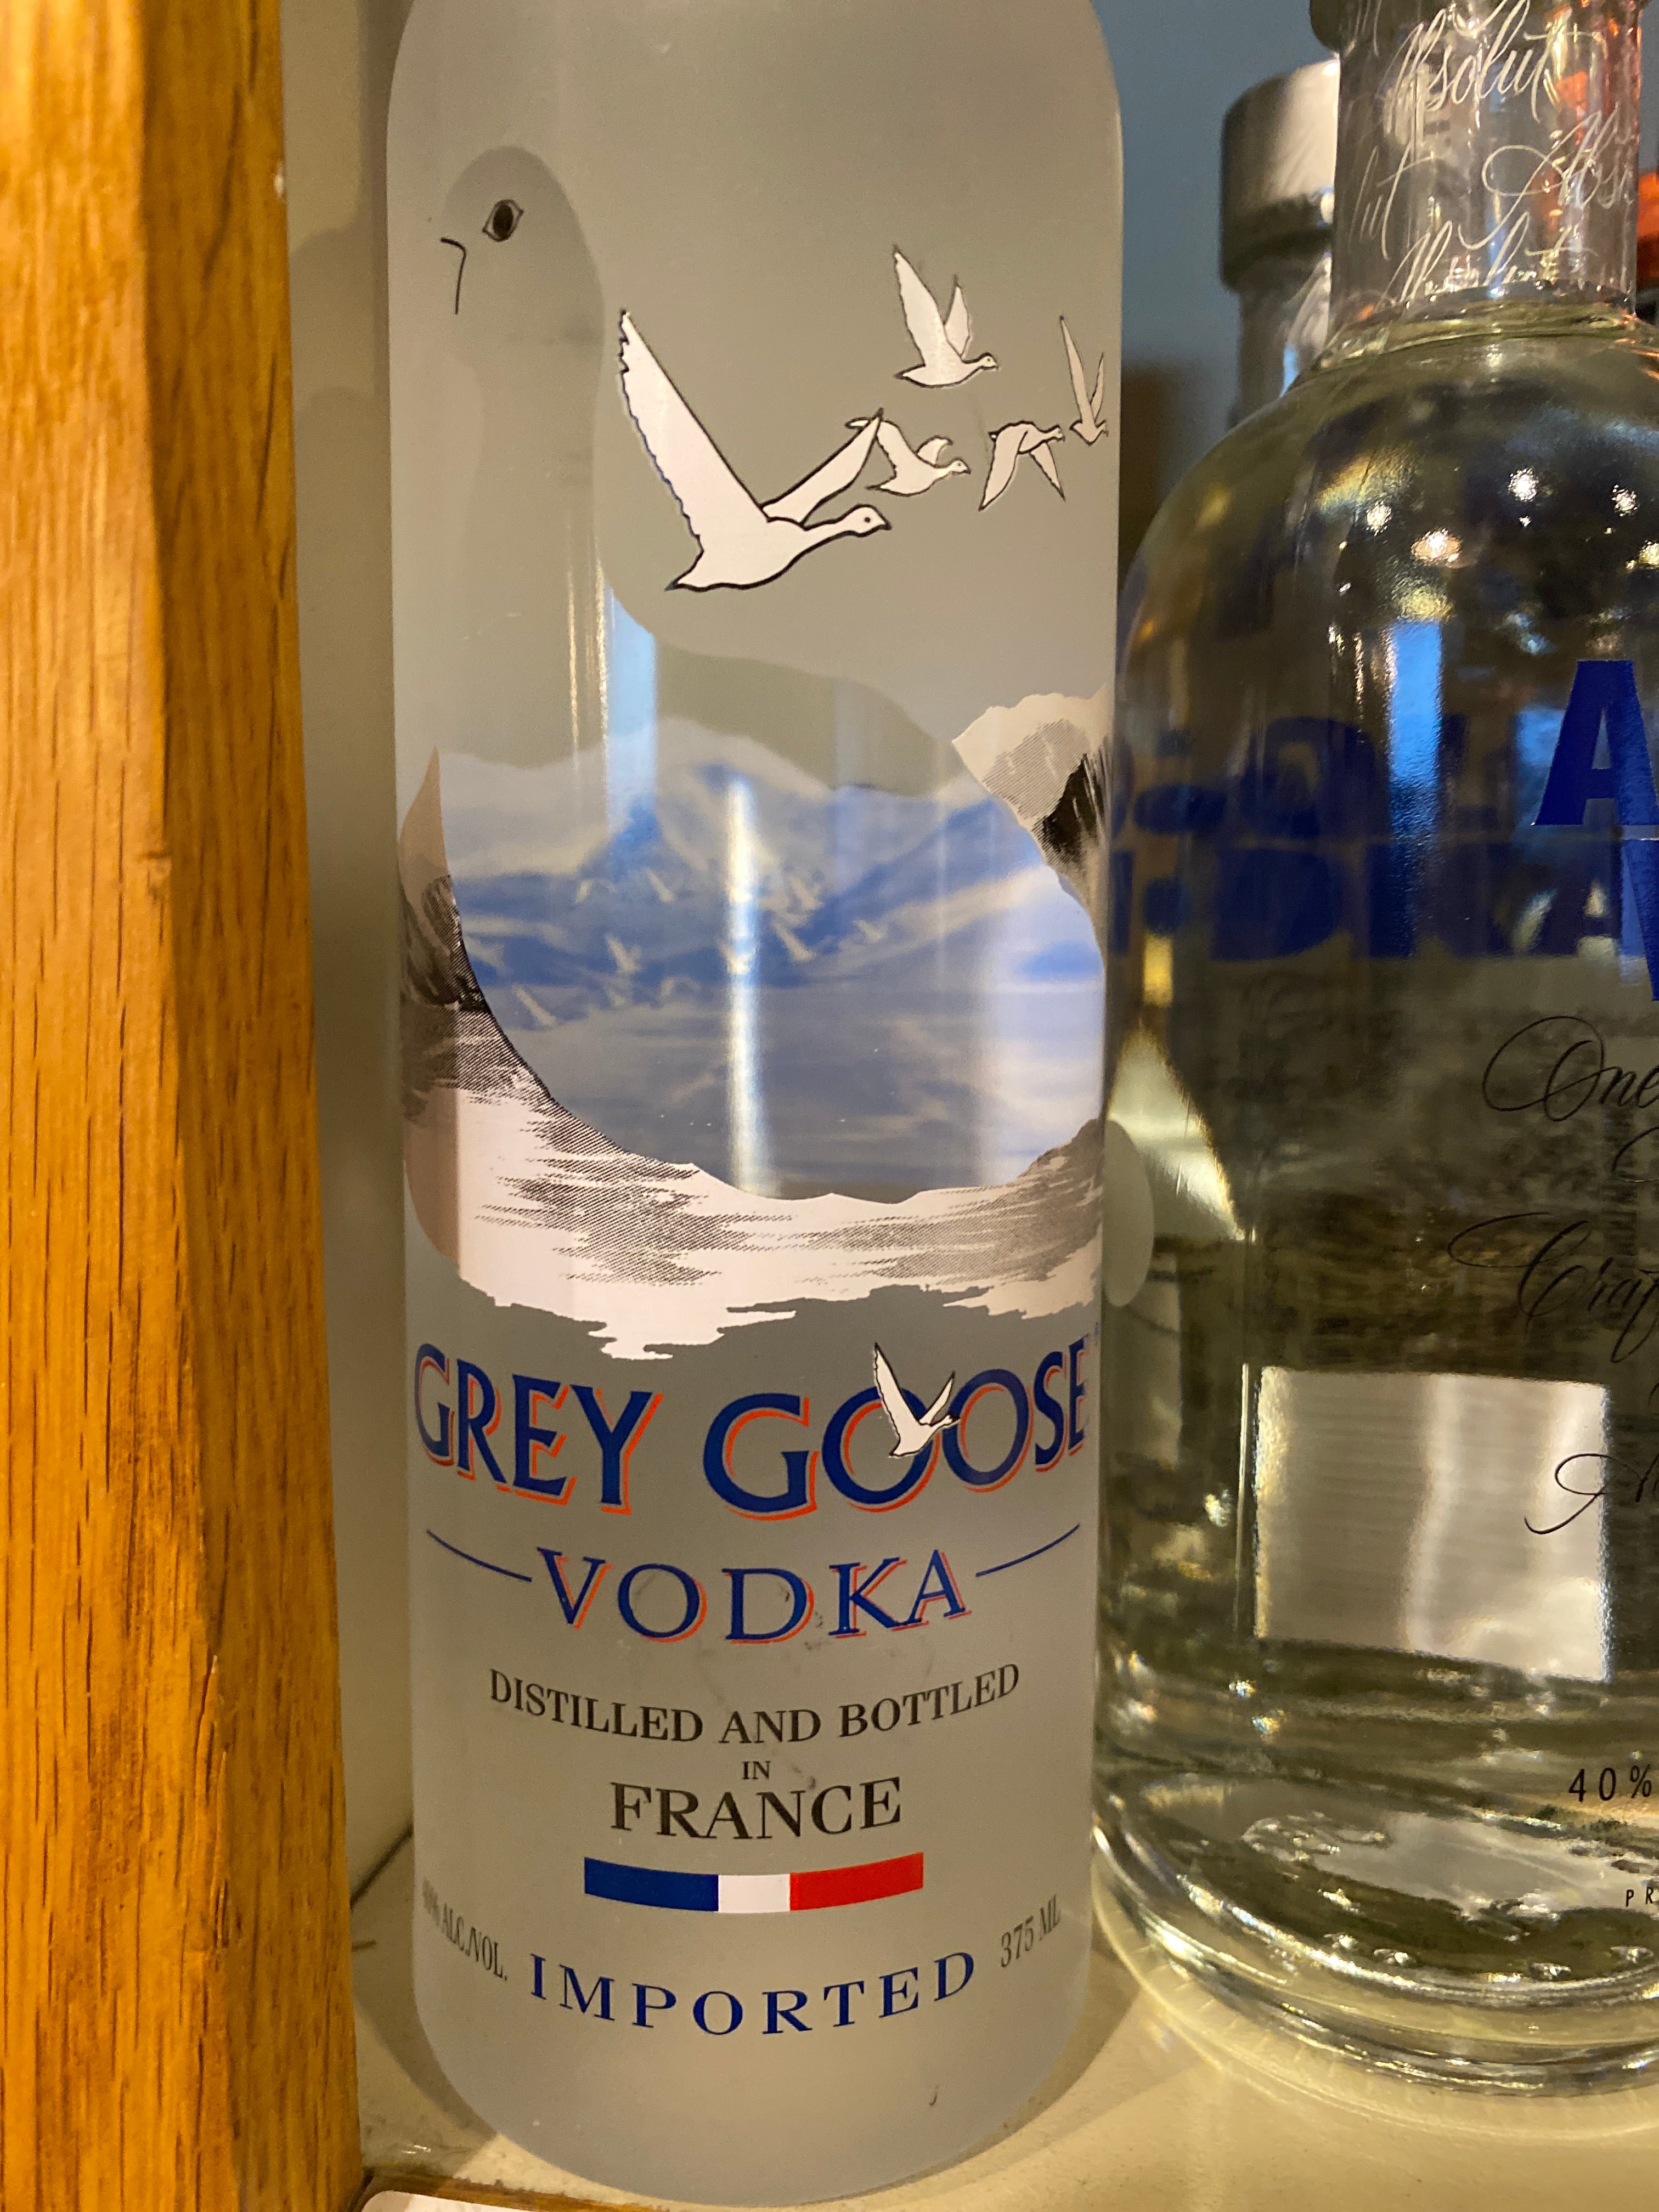 Buy Grey Goose Vodka Online!